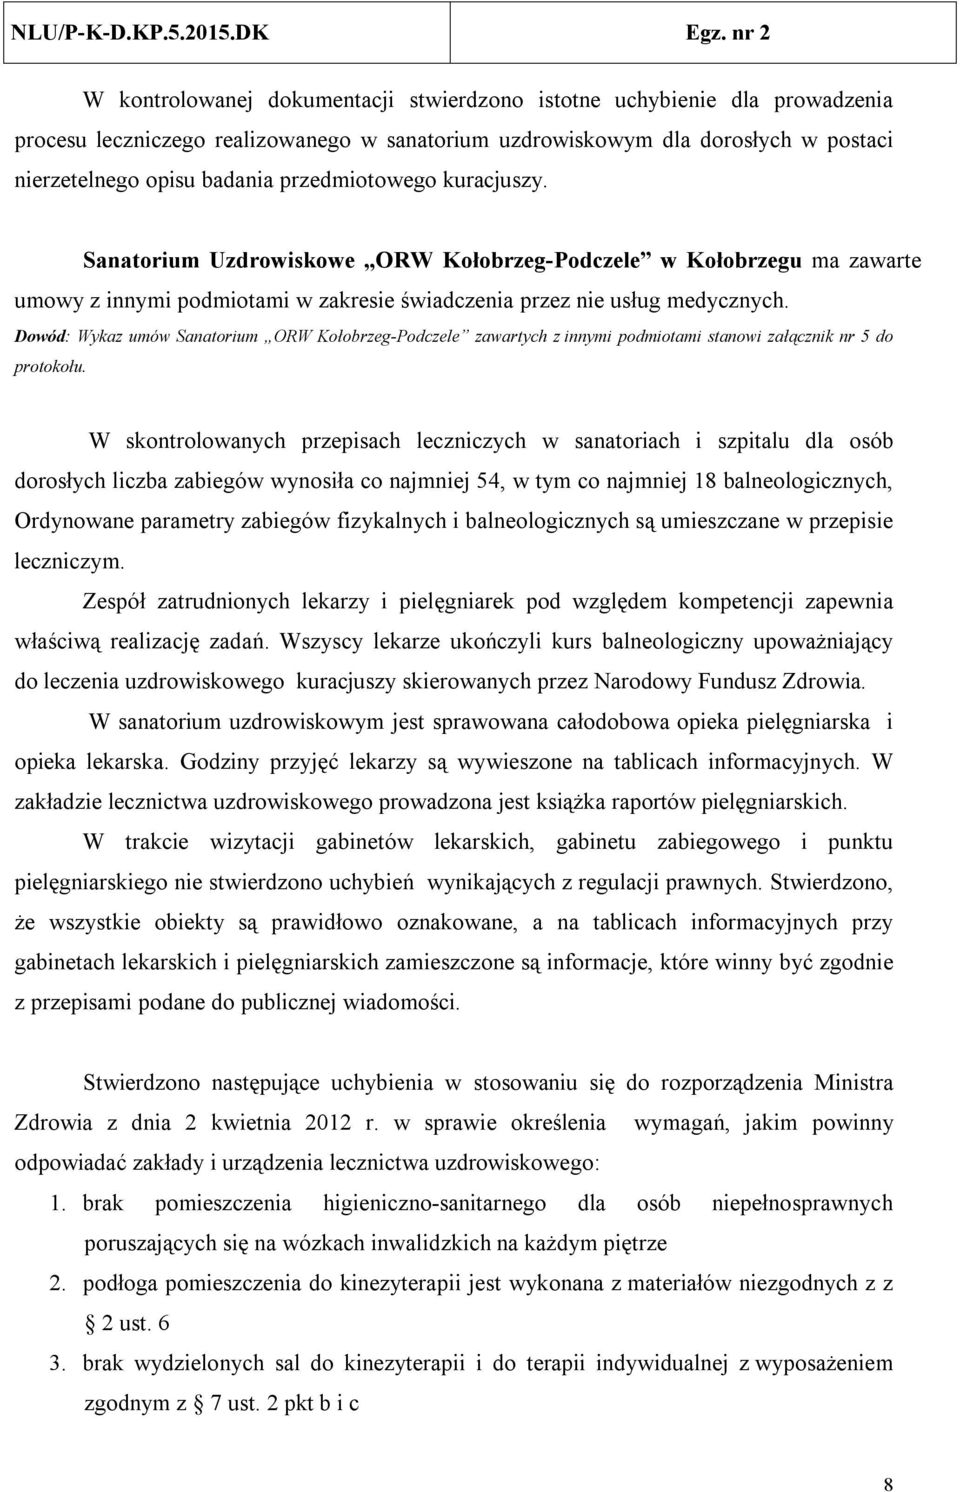 Dowód: Wykaz umów Sanatorium ORW Kołobrzeg-Podczele zawartych z innymi podmiotami stanowi załącznik nr 5 do protokołu.